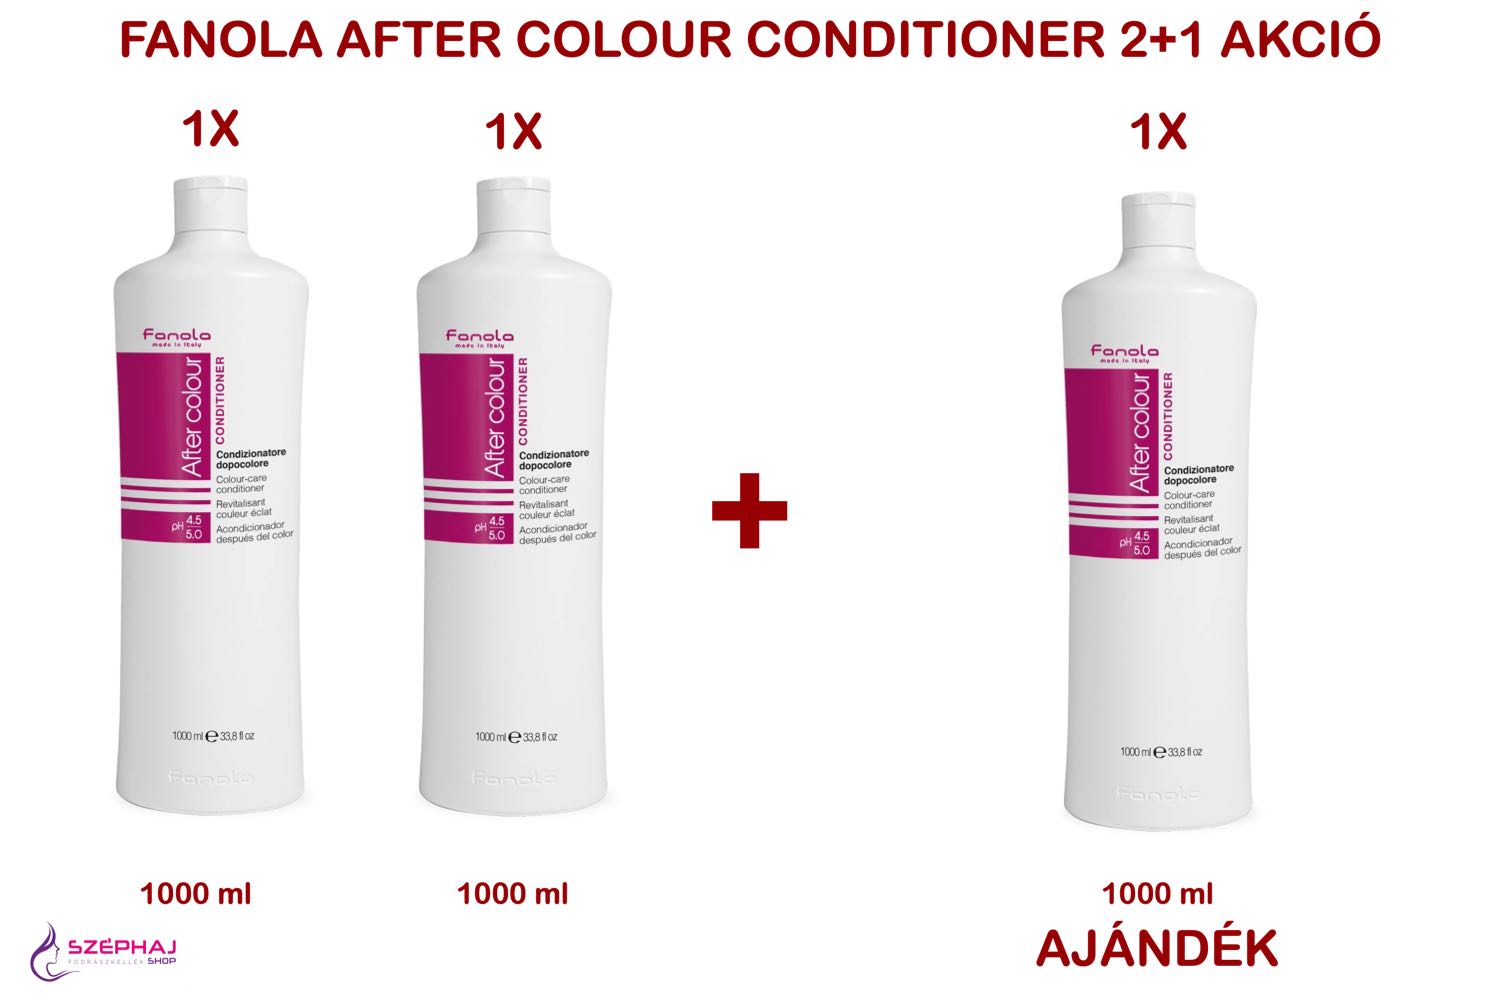 FANOLA After Colour Conditioner 1000 ml 2+1 AKCIÓ